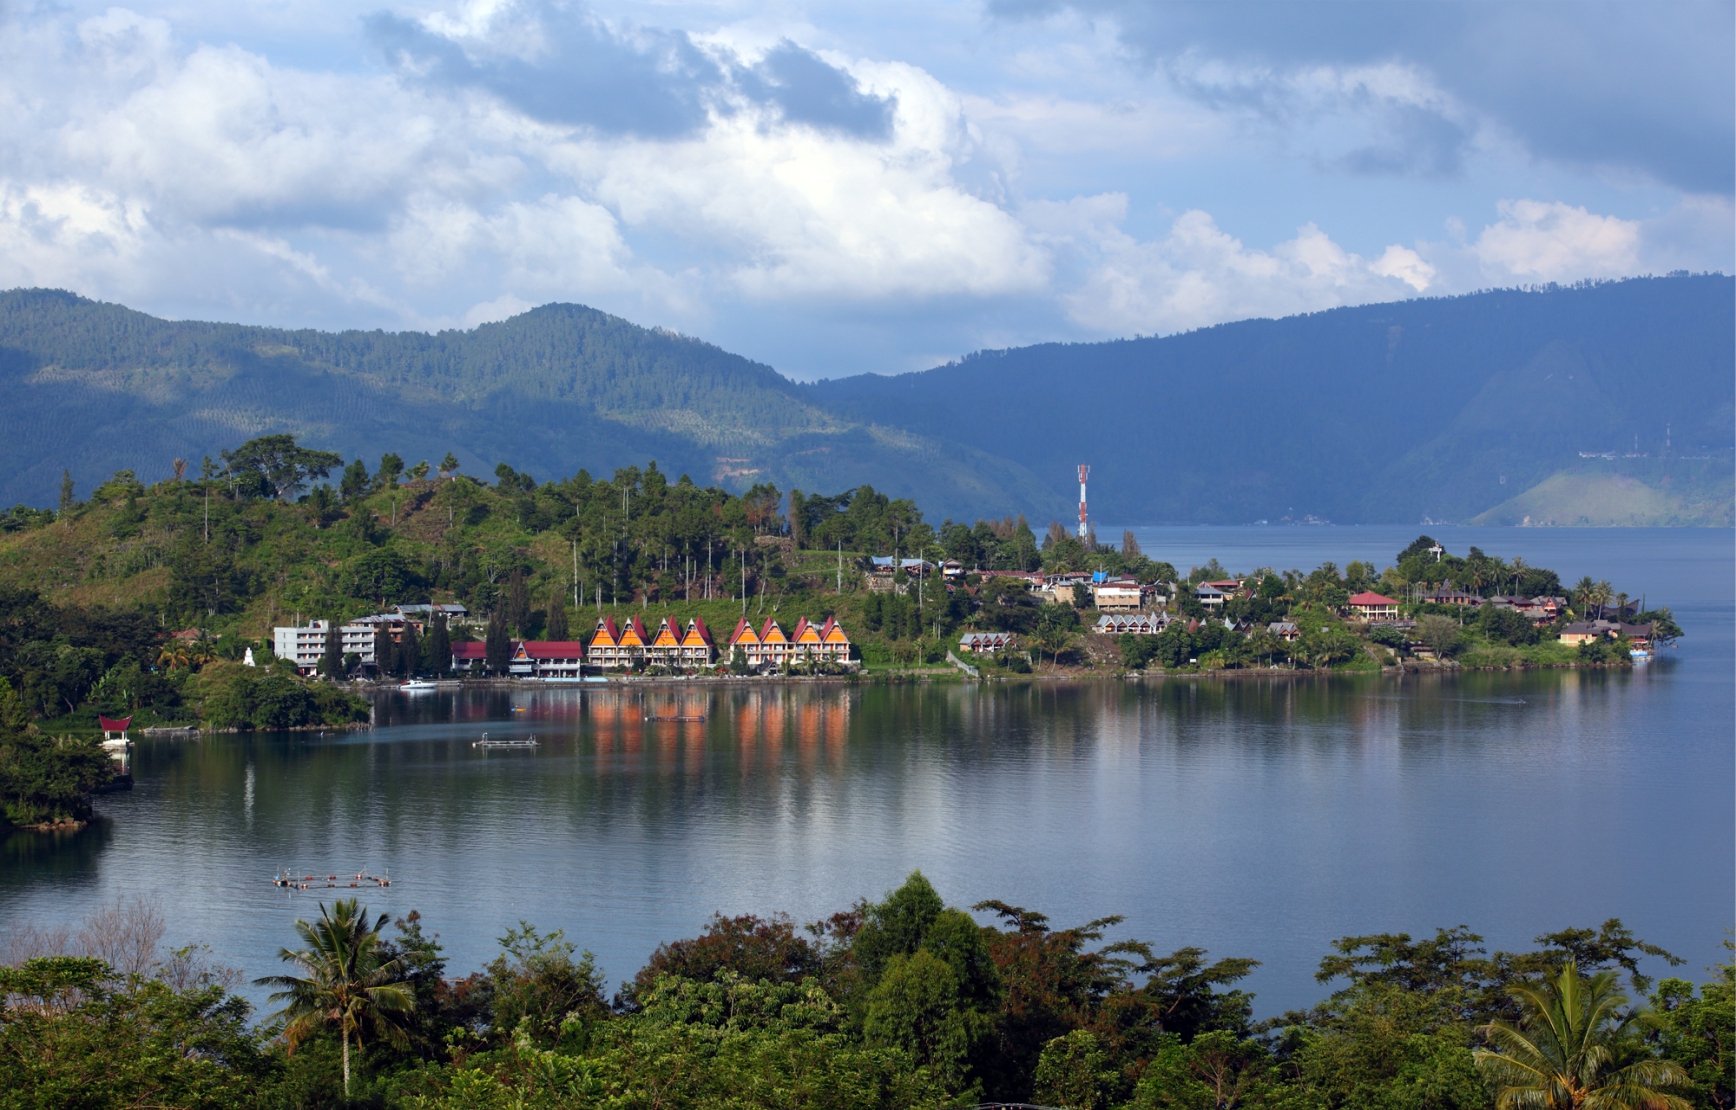 The Grandiose Toba Lake in North Sumatra Province